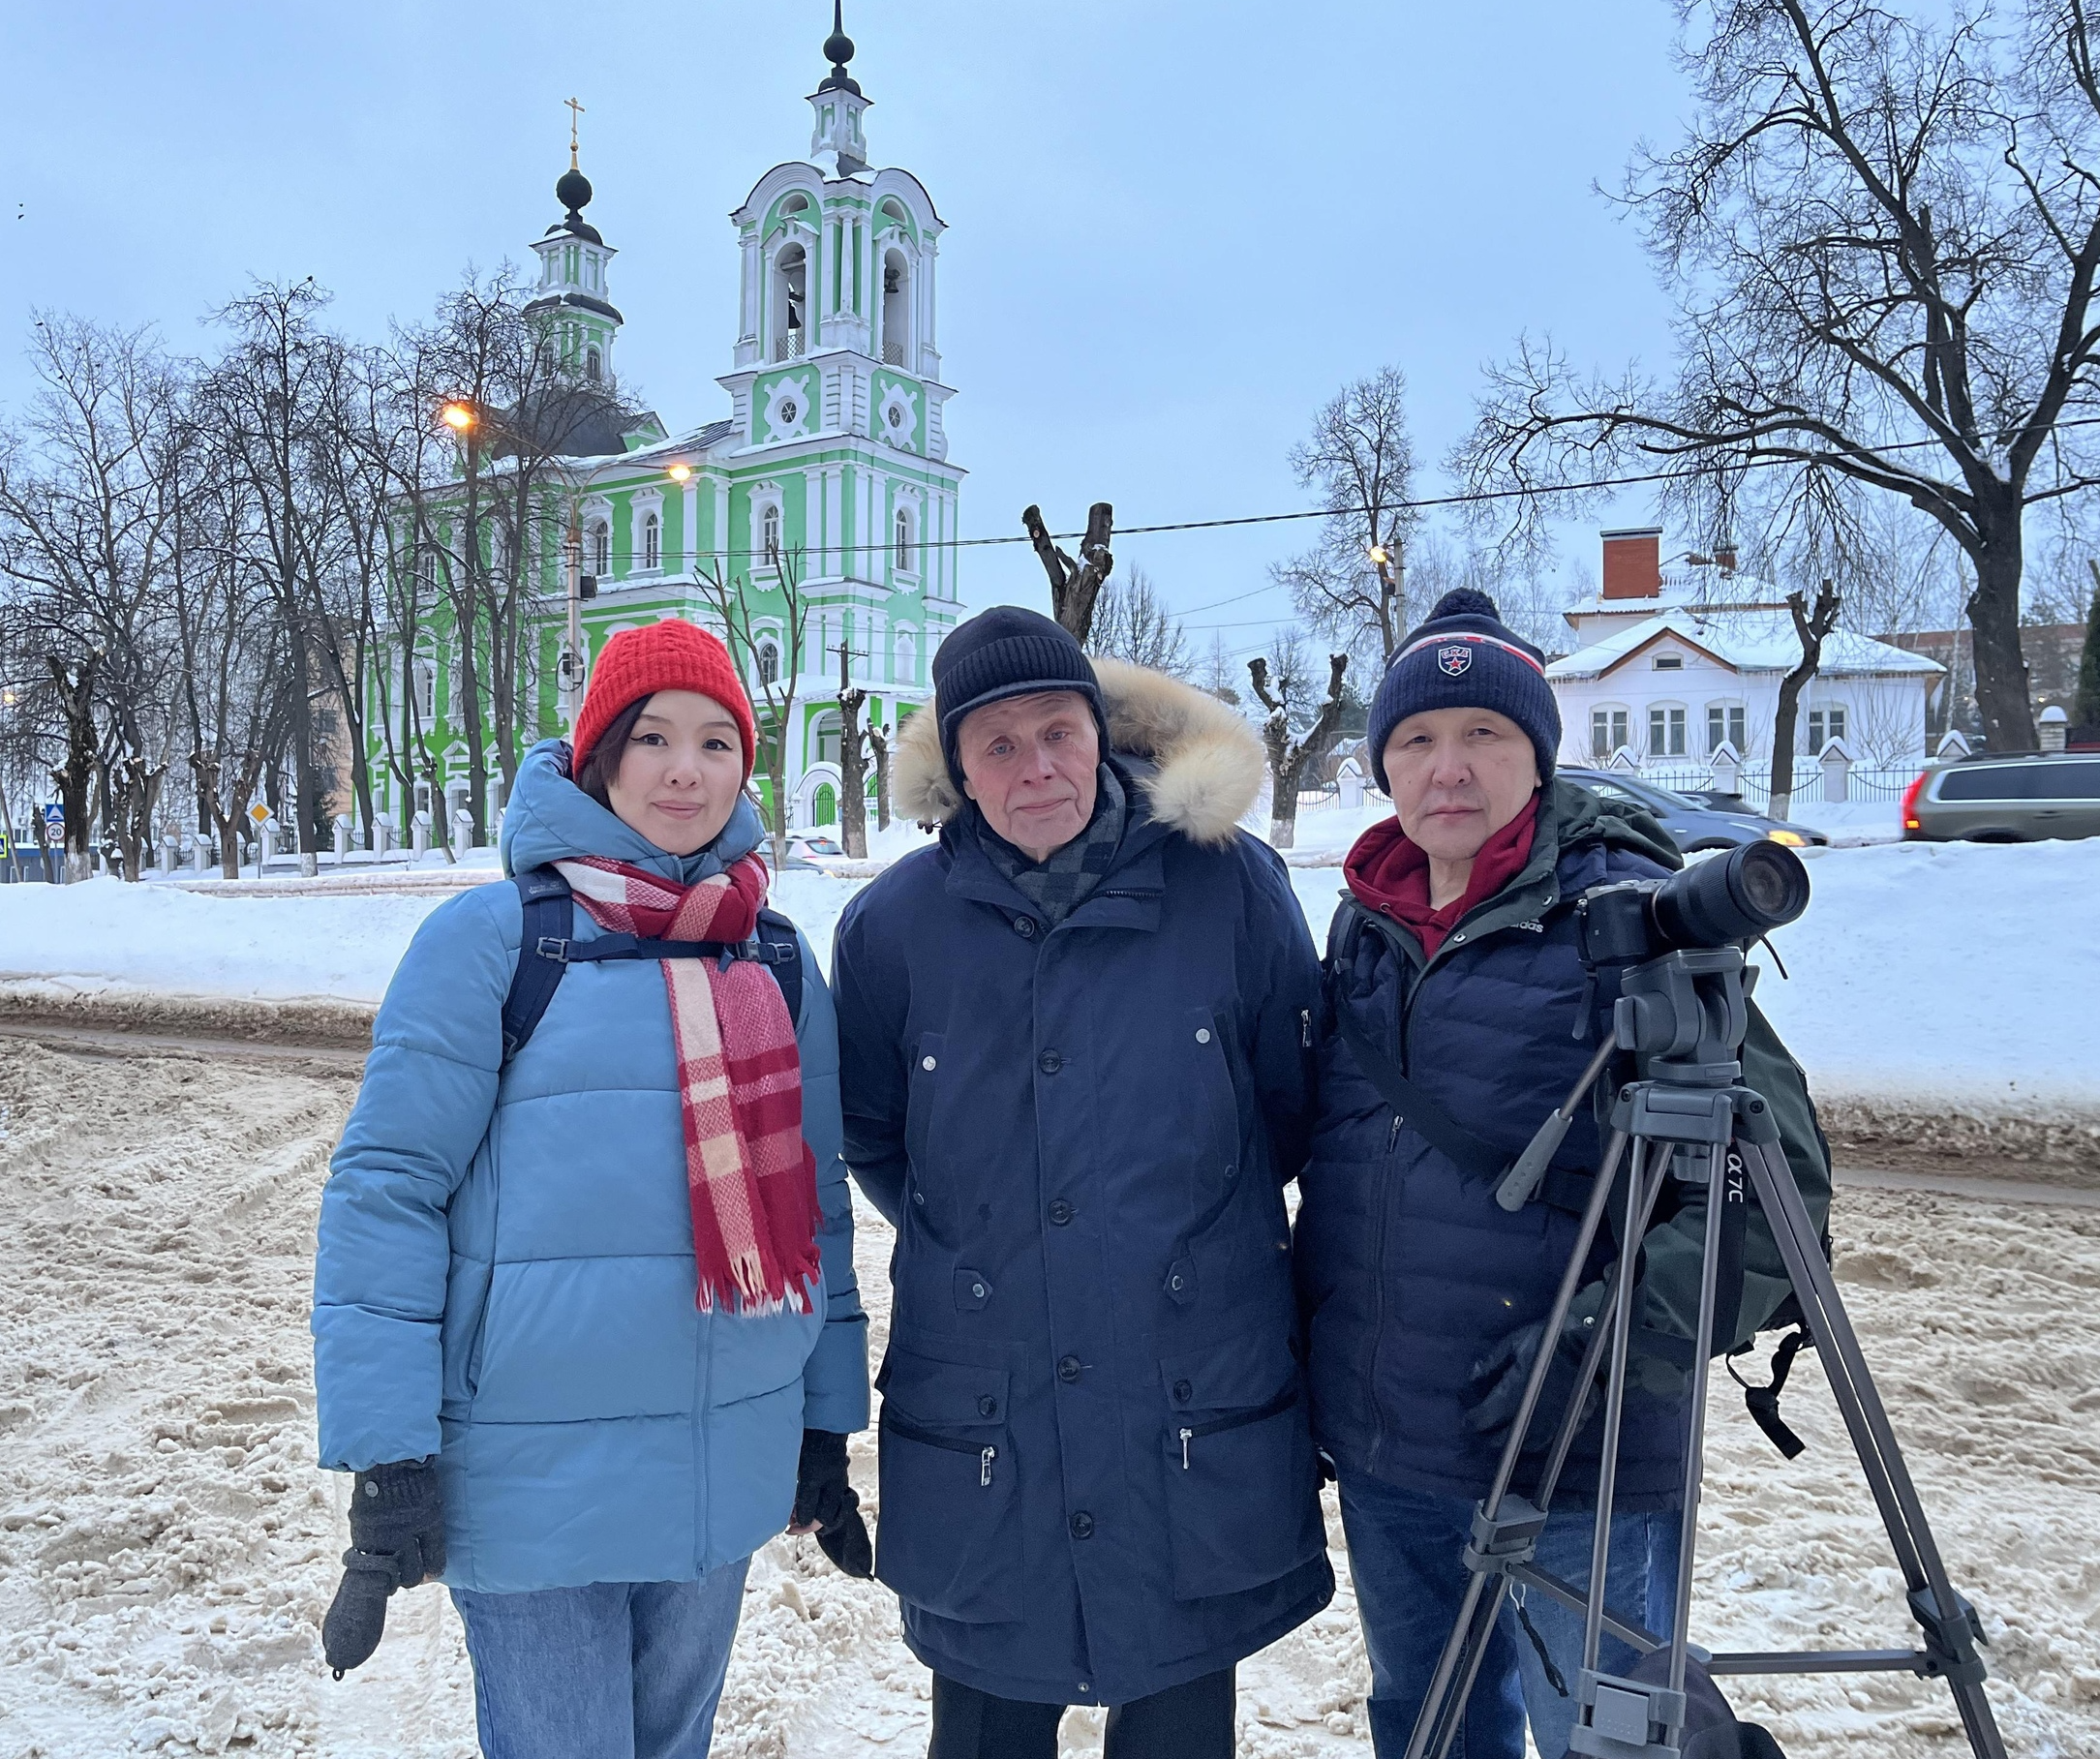 Съемочная команда из Якутии снимает документальный фильм в подмосковном Дмитрове